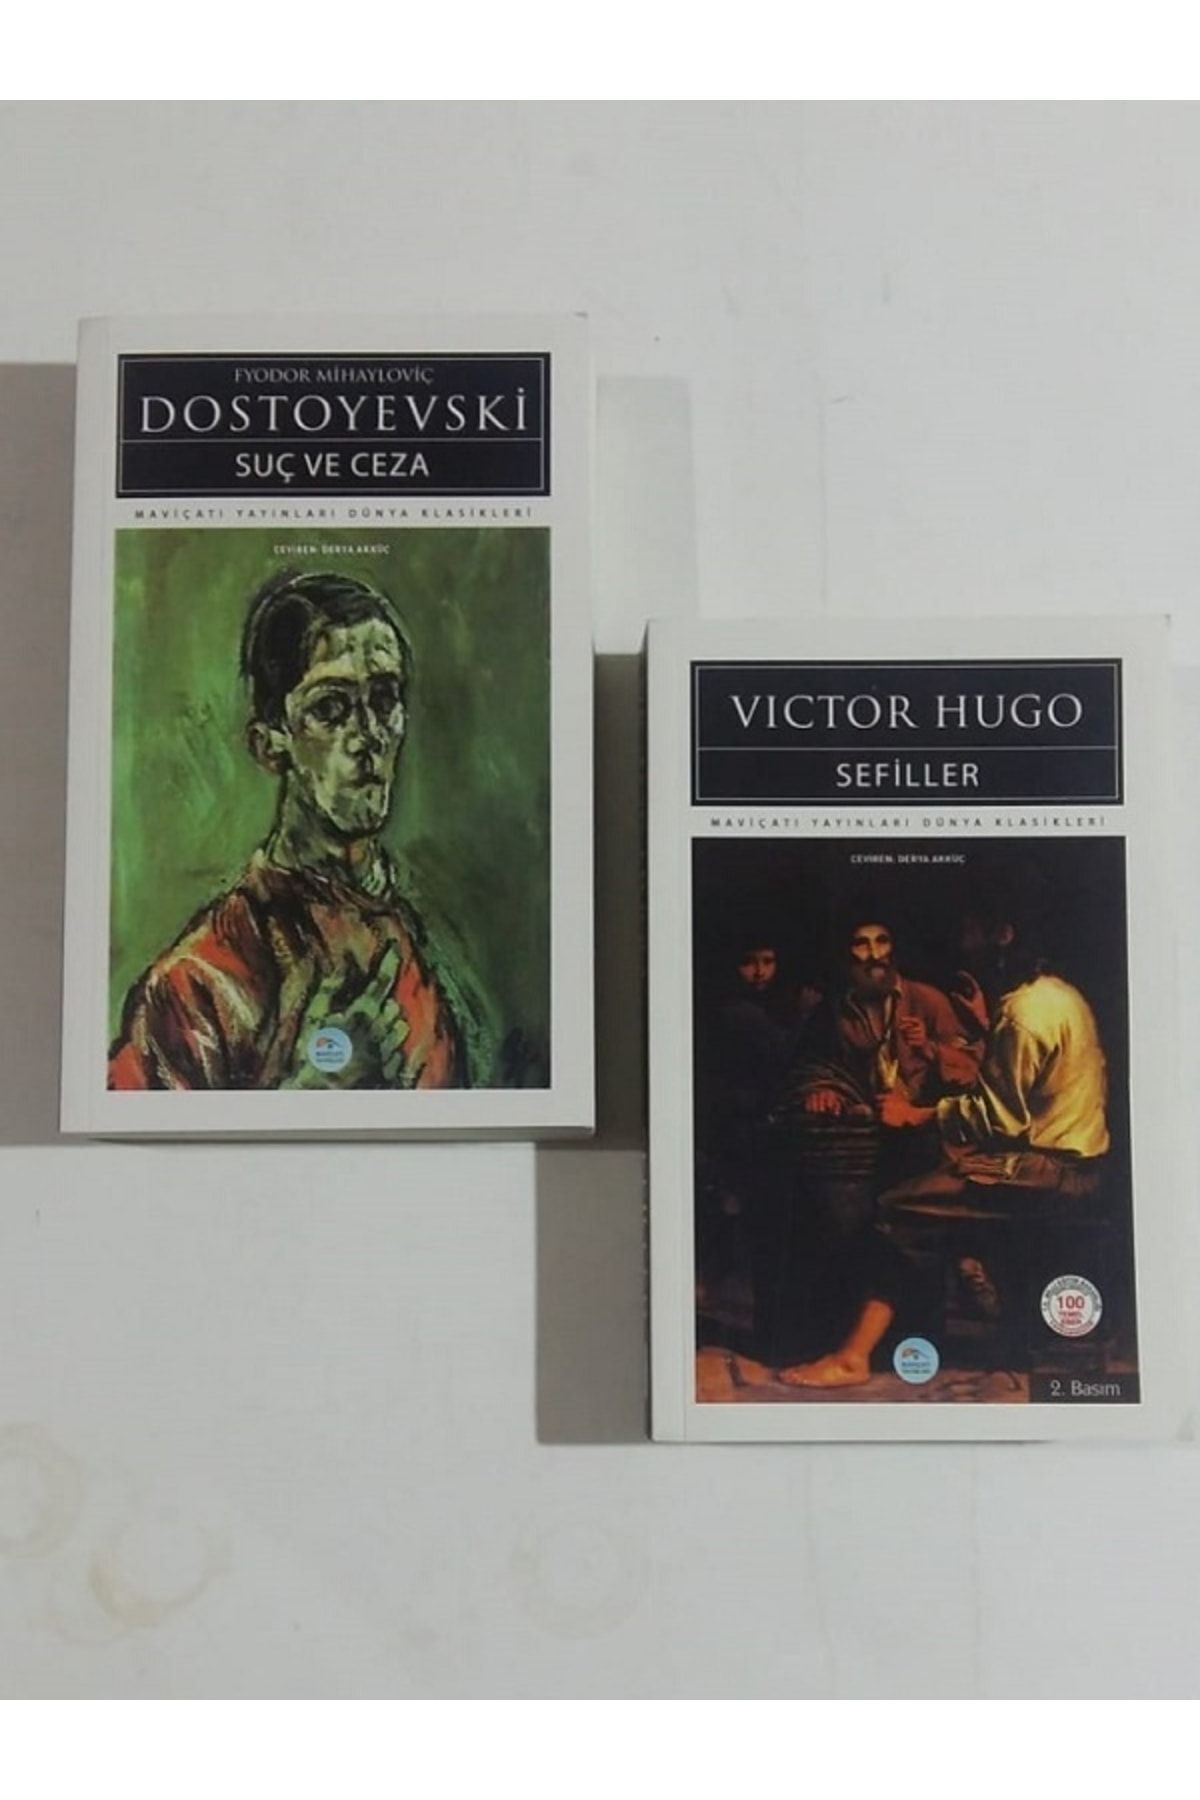 Mavi Çatı Yayınları Sefiller (victor Hugo) + Suç Ve Ceza (dostoyevski) 2 Kitap Set.